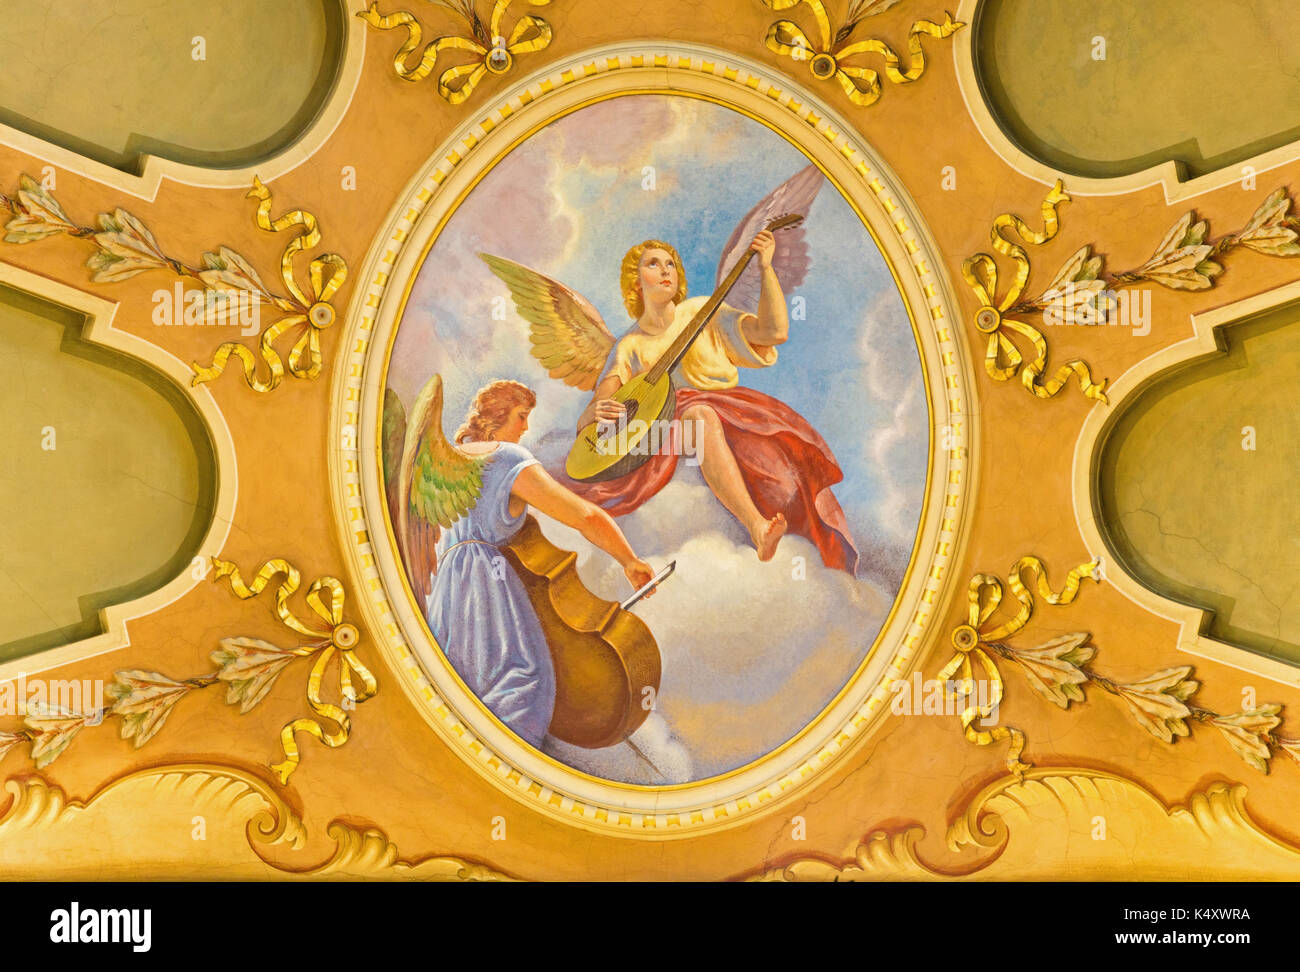 TURIN, Italien, 13. MÄRZ 2017: Das Fresko der Engel mit der Musik instrumente in der Kirche Chiesa di Santo Tomaso von Giovanni Battista Secchi. Stockfoto